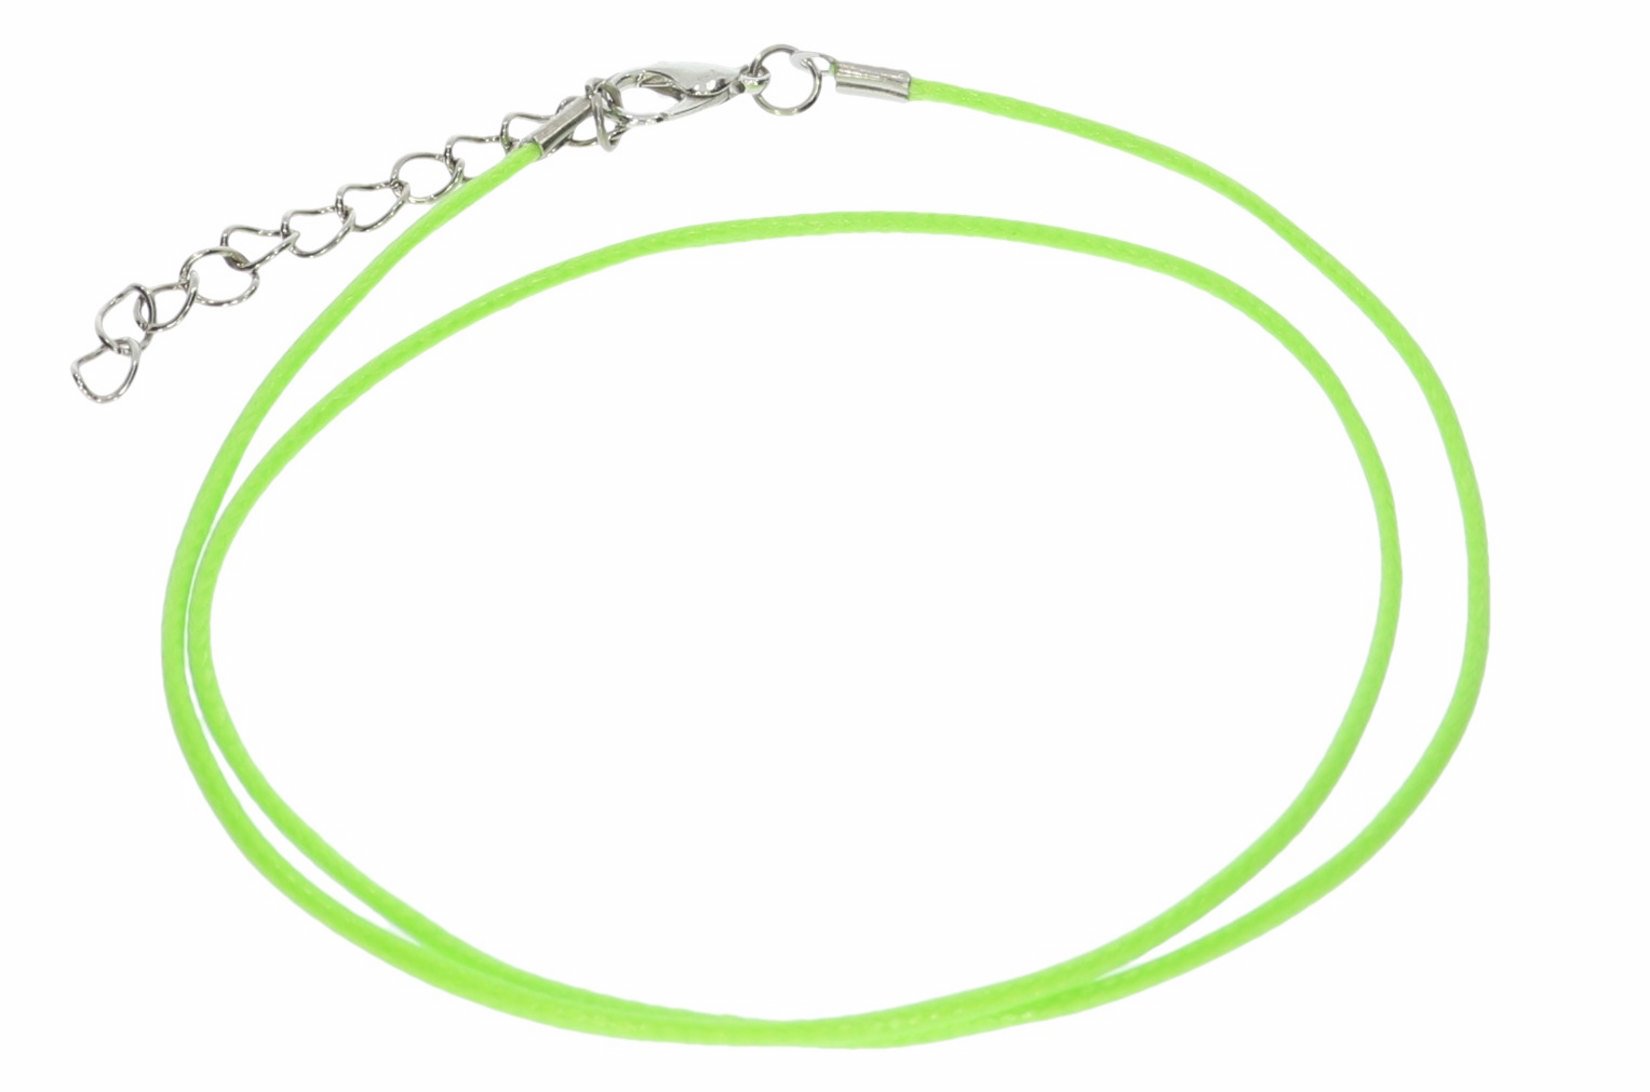 Neongrün - Baumwollband Halskette mit Edelstahl Karabiner 45-50cm - A241C